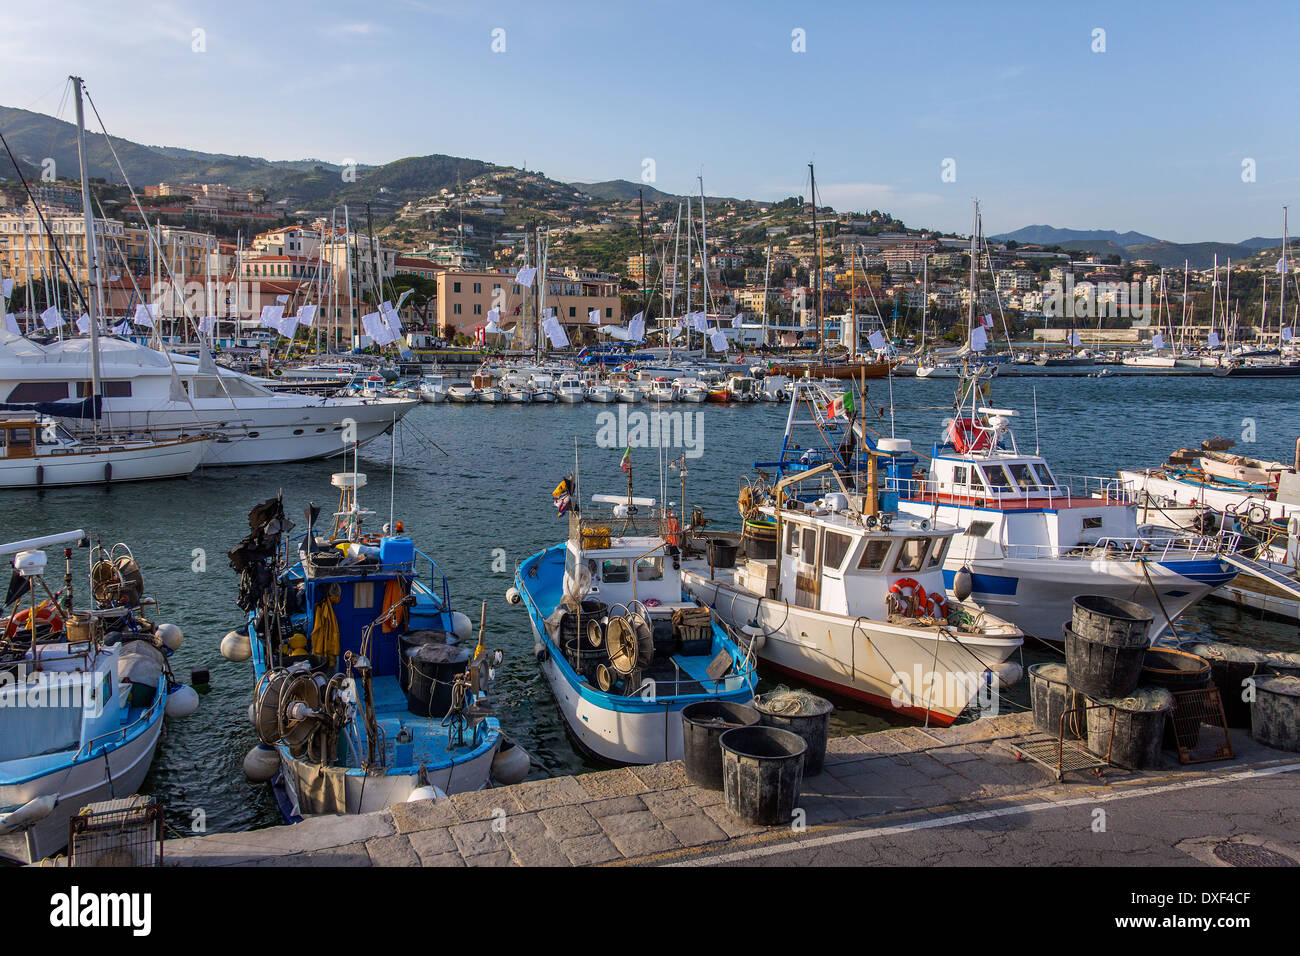 Le port de la Méditerranée resort de San Remo (Sanremo) sur la côte nord-ouest de l'Italie. Banque D'Images